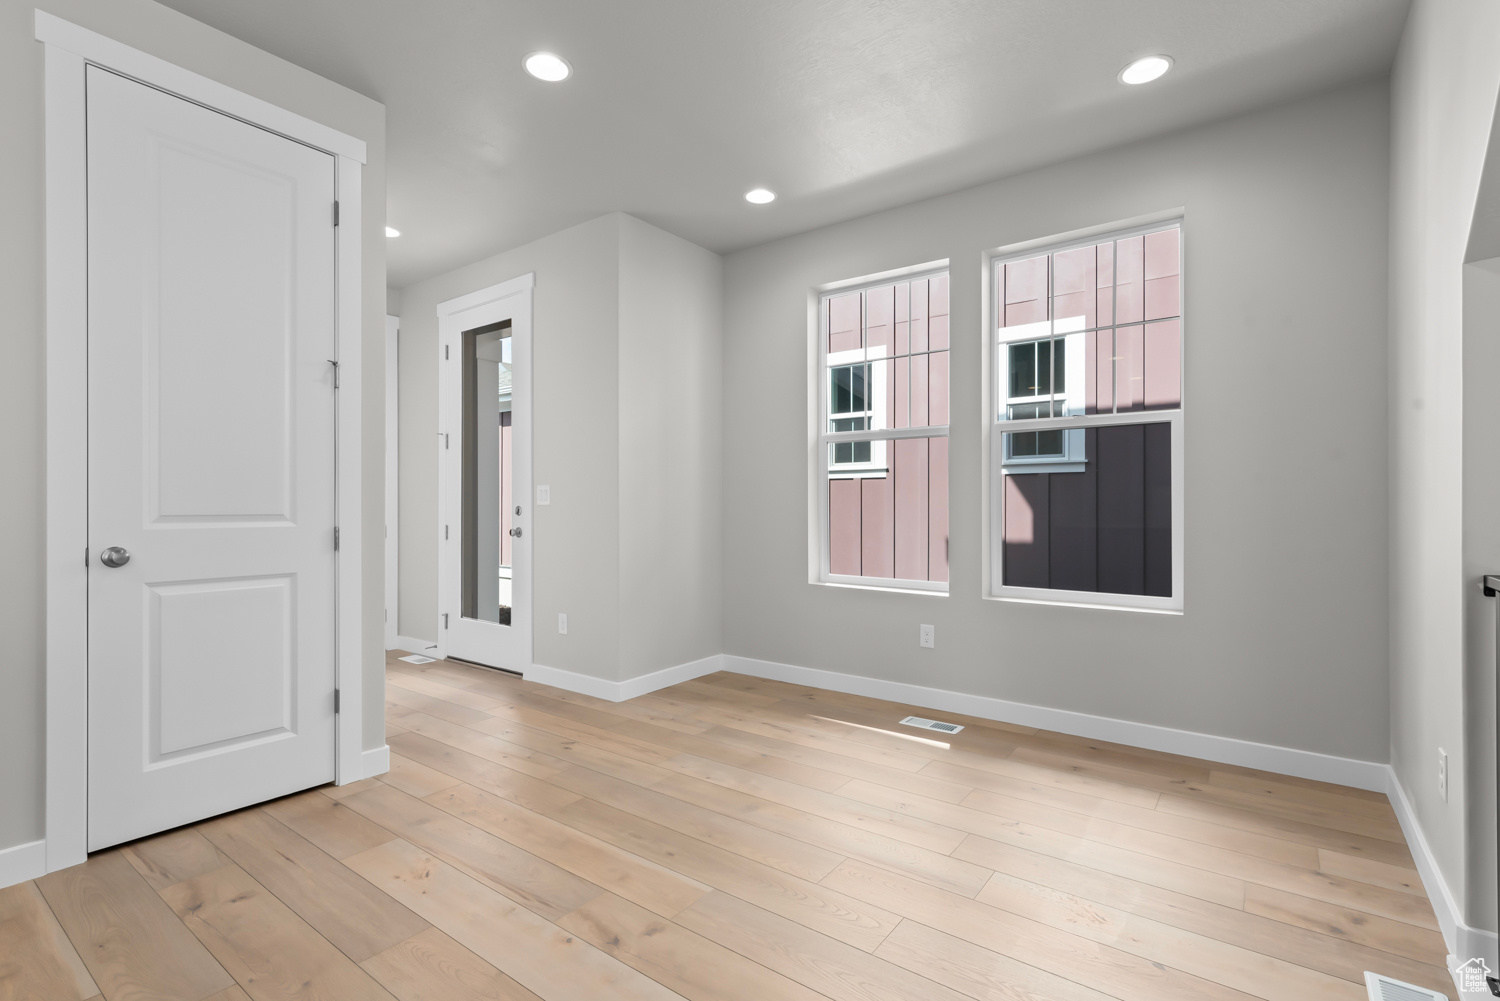 Spare room with light hardwood / wood-style floors